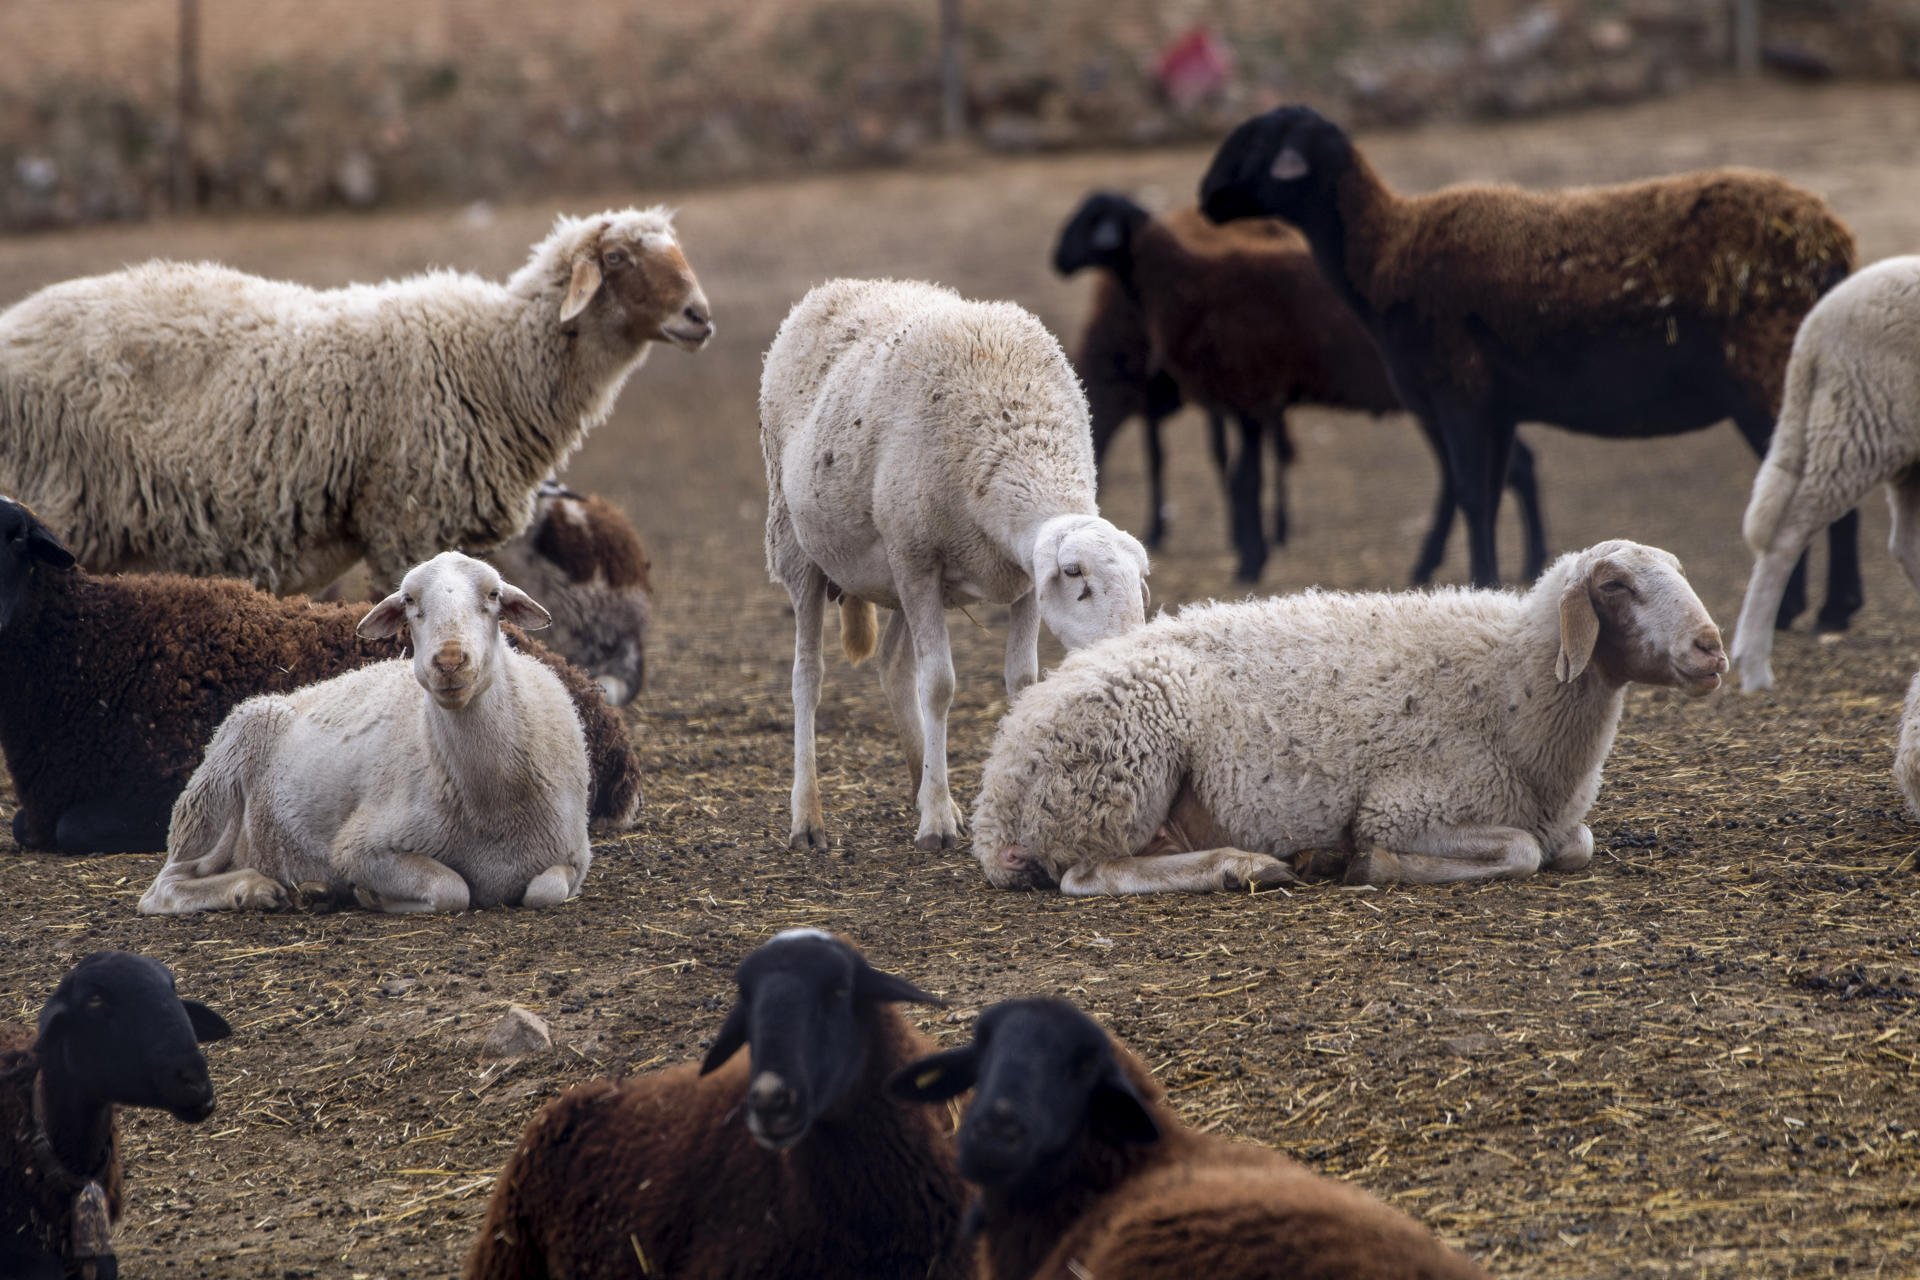 La verola ovina comença a estendre's per les granges espanyoles